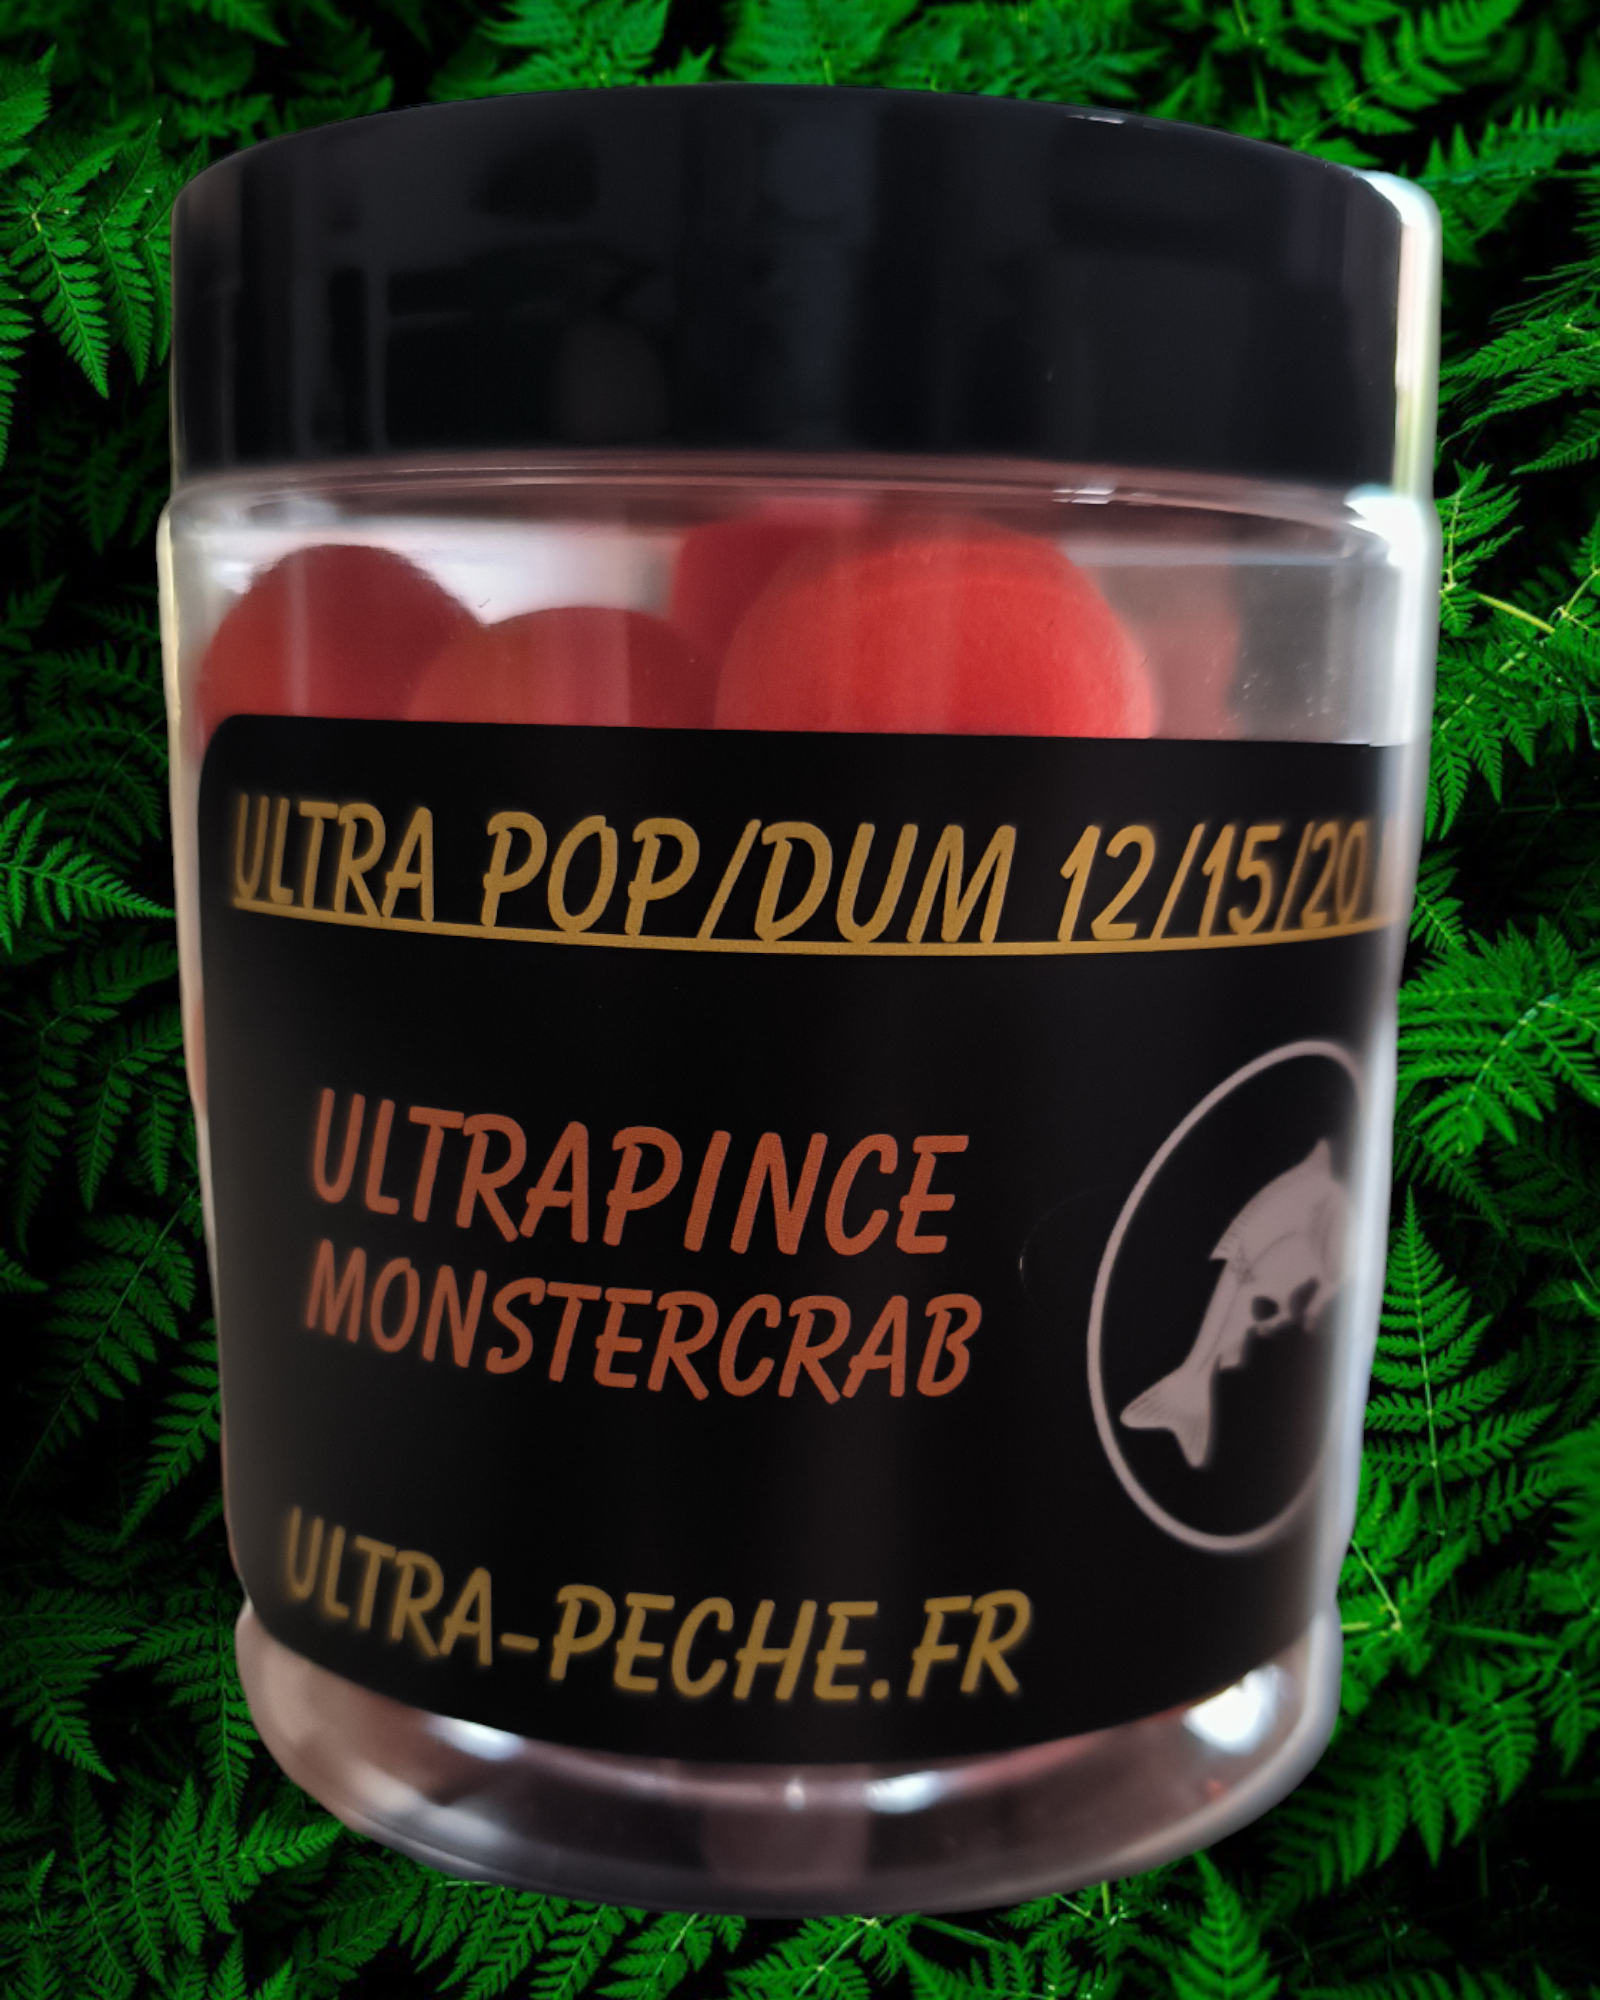 POP UP 20mm ULTRAPINCE MonsterCrab 80g Ultra-peche